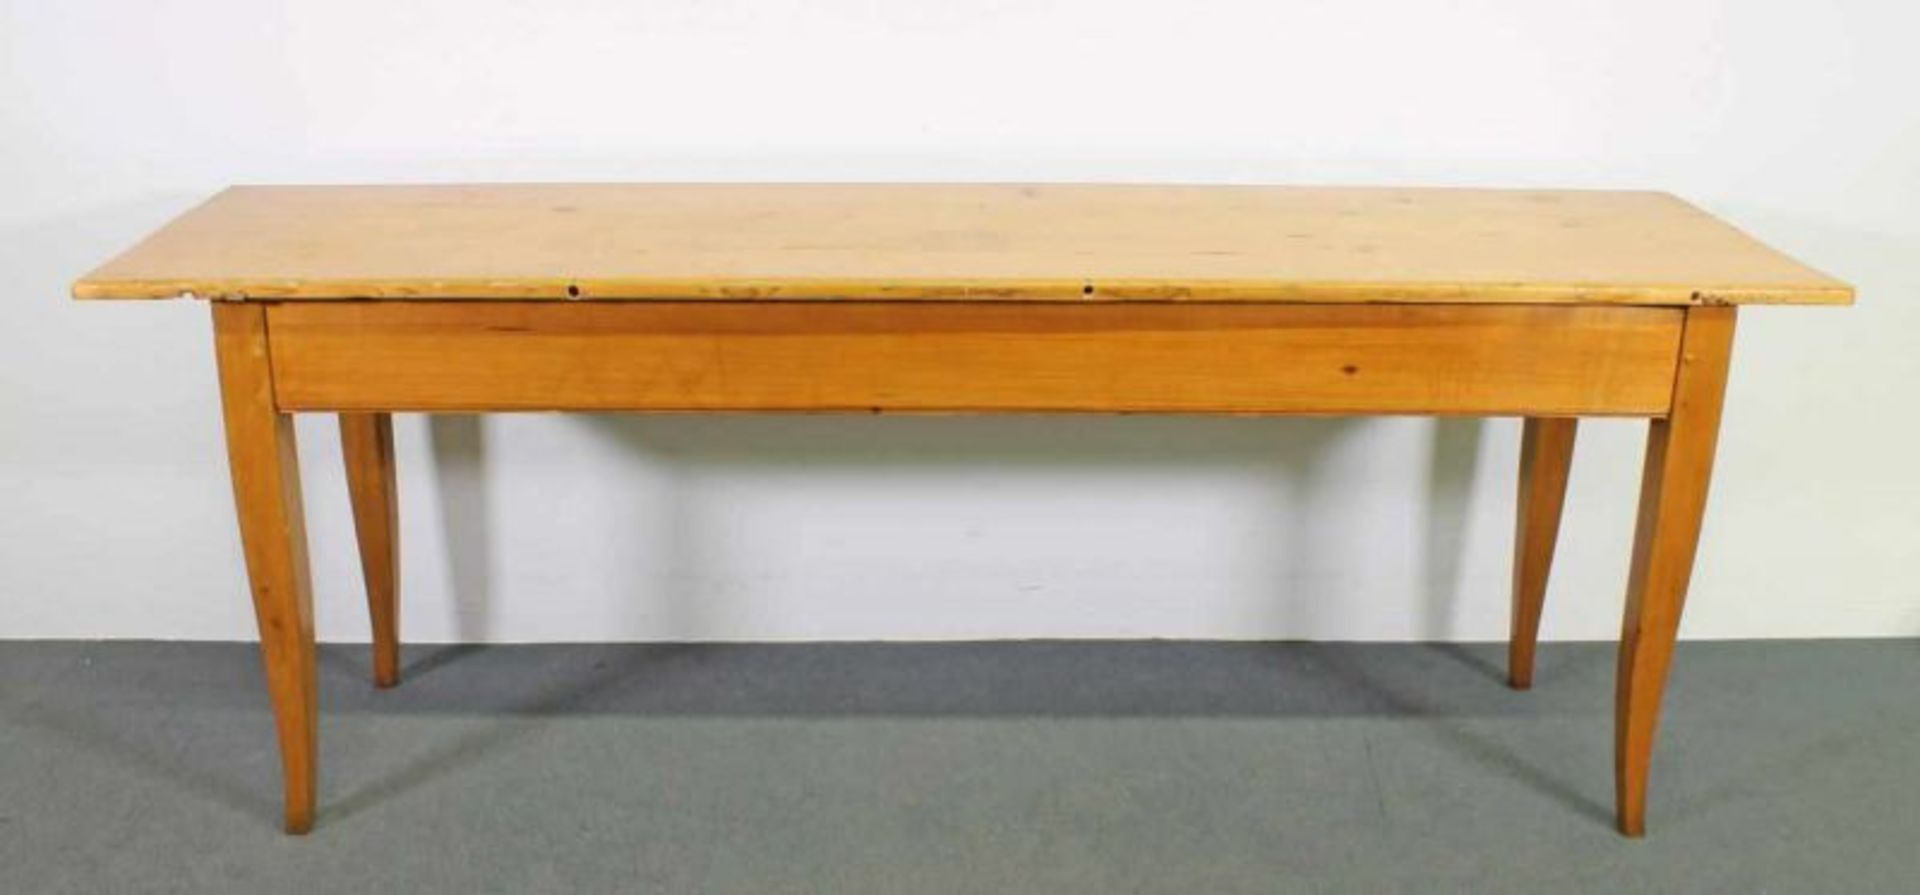 Tisch, 19. Jh., Platte Weichholz, nicht originale Beine in Buche, 77 x 212 x 57 cm, Gebrauchs- und